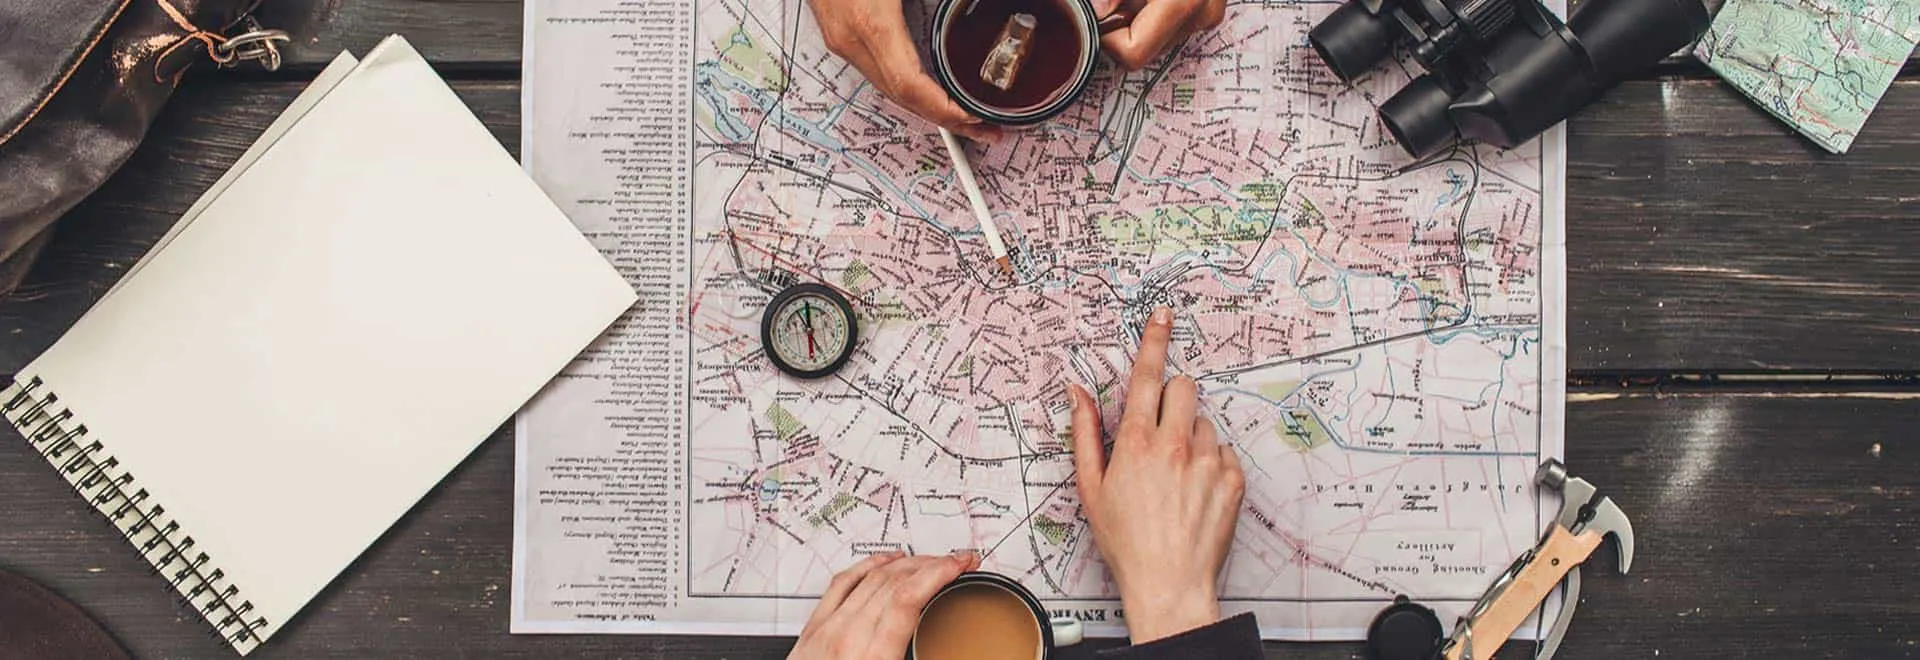 Eine Landkarte und weitere Reiseutensilien liegen auf einem Tisch, eine Hand zeigt auf einen Punkt auf der Karte.